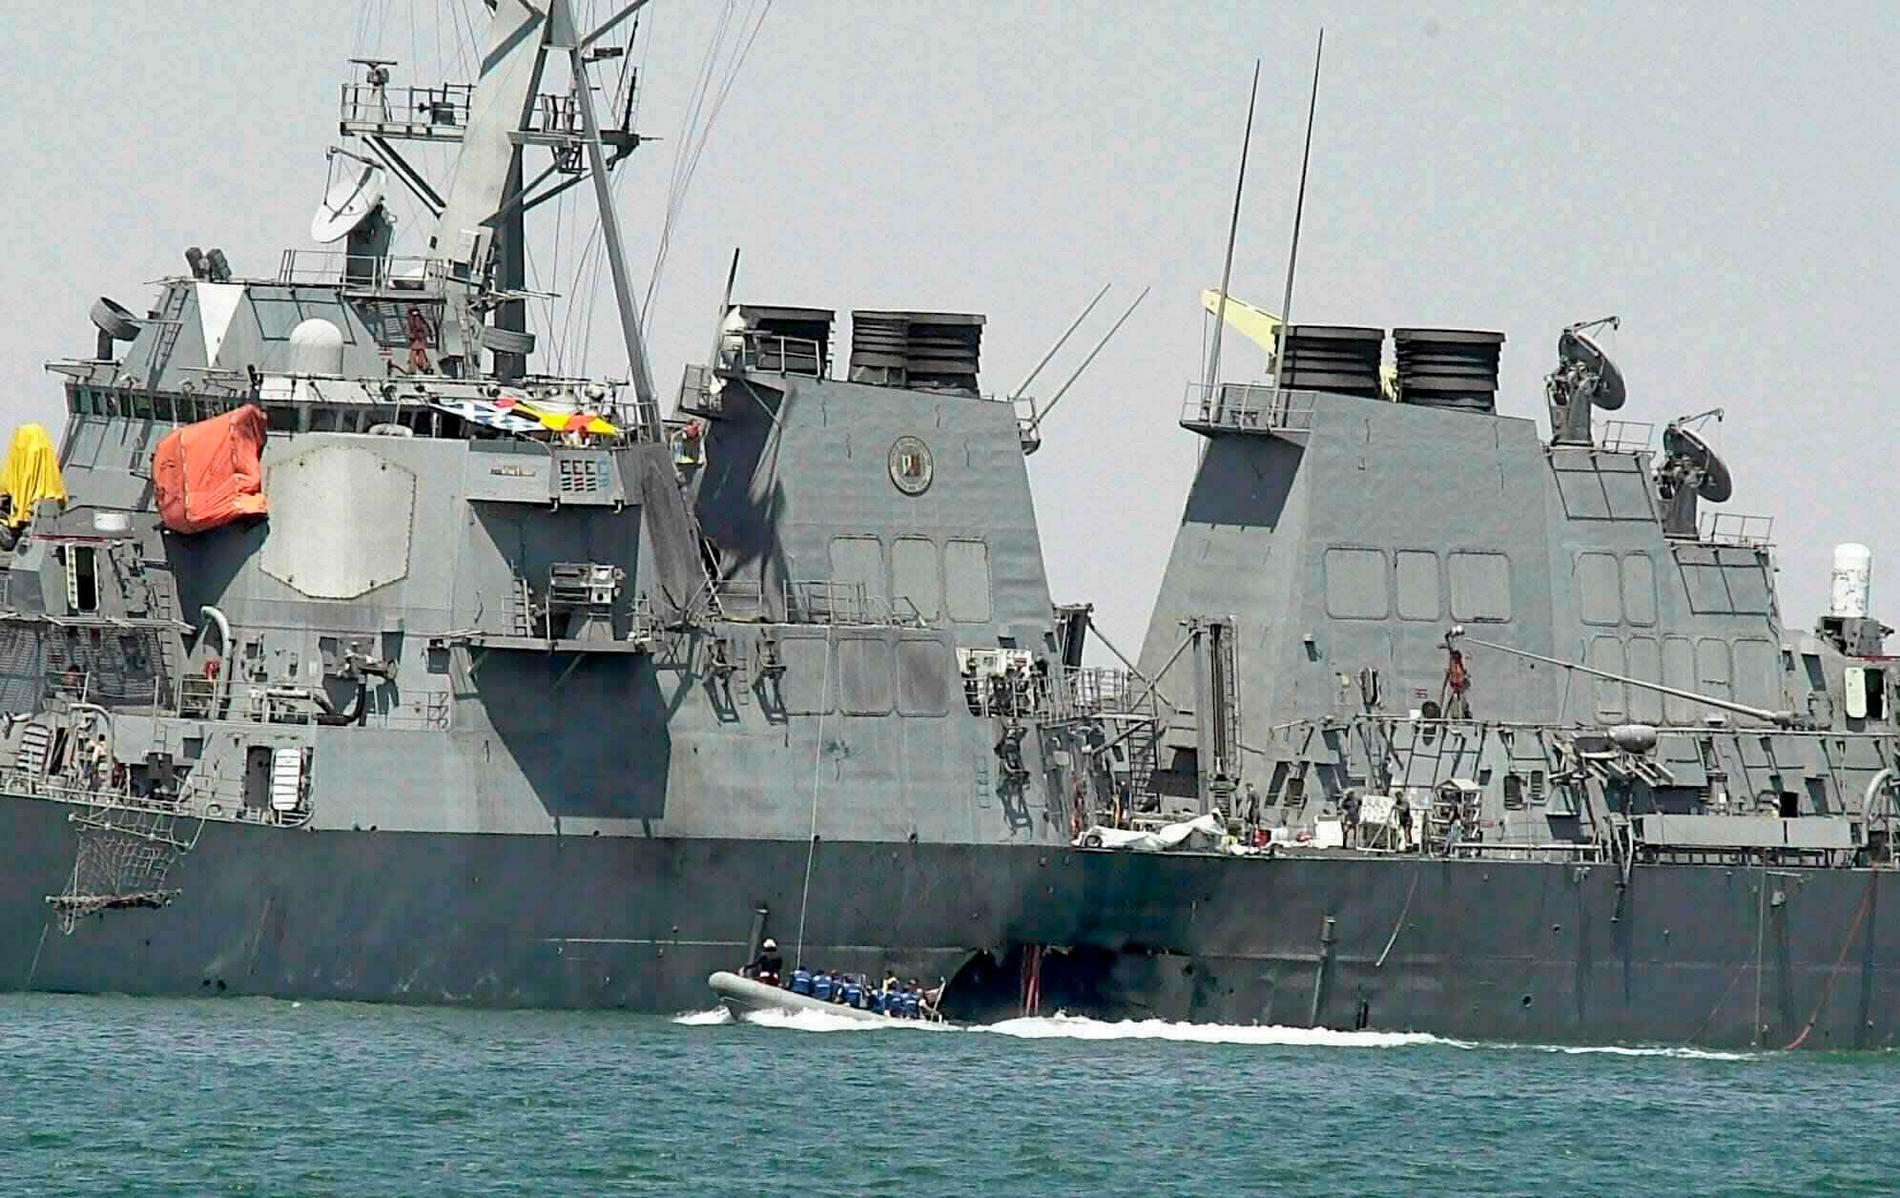 USS Coles skrov undersöks av experter efter attacken i den jemenitiska hamnstaden Aden i oktober 2000, då 17 amerikaner i besättningen dödades. Arkivbild.